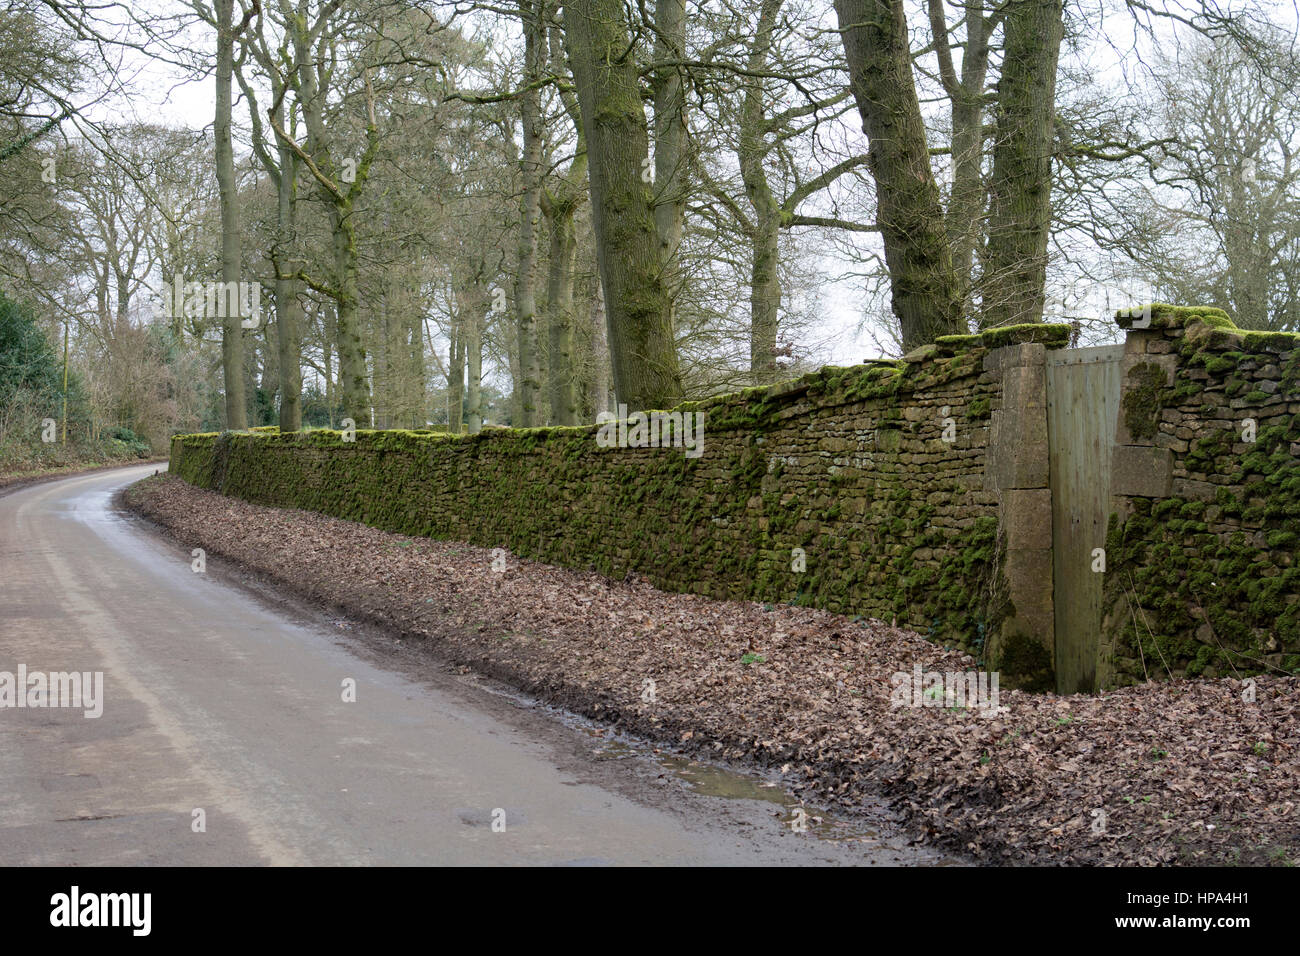 Batsford Arboretum boundary wall, Gloucestershire, England, UK Stock Photo